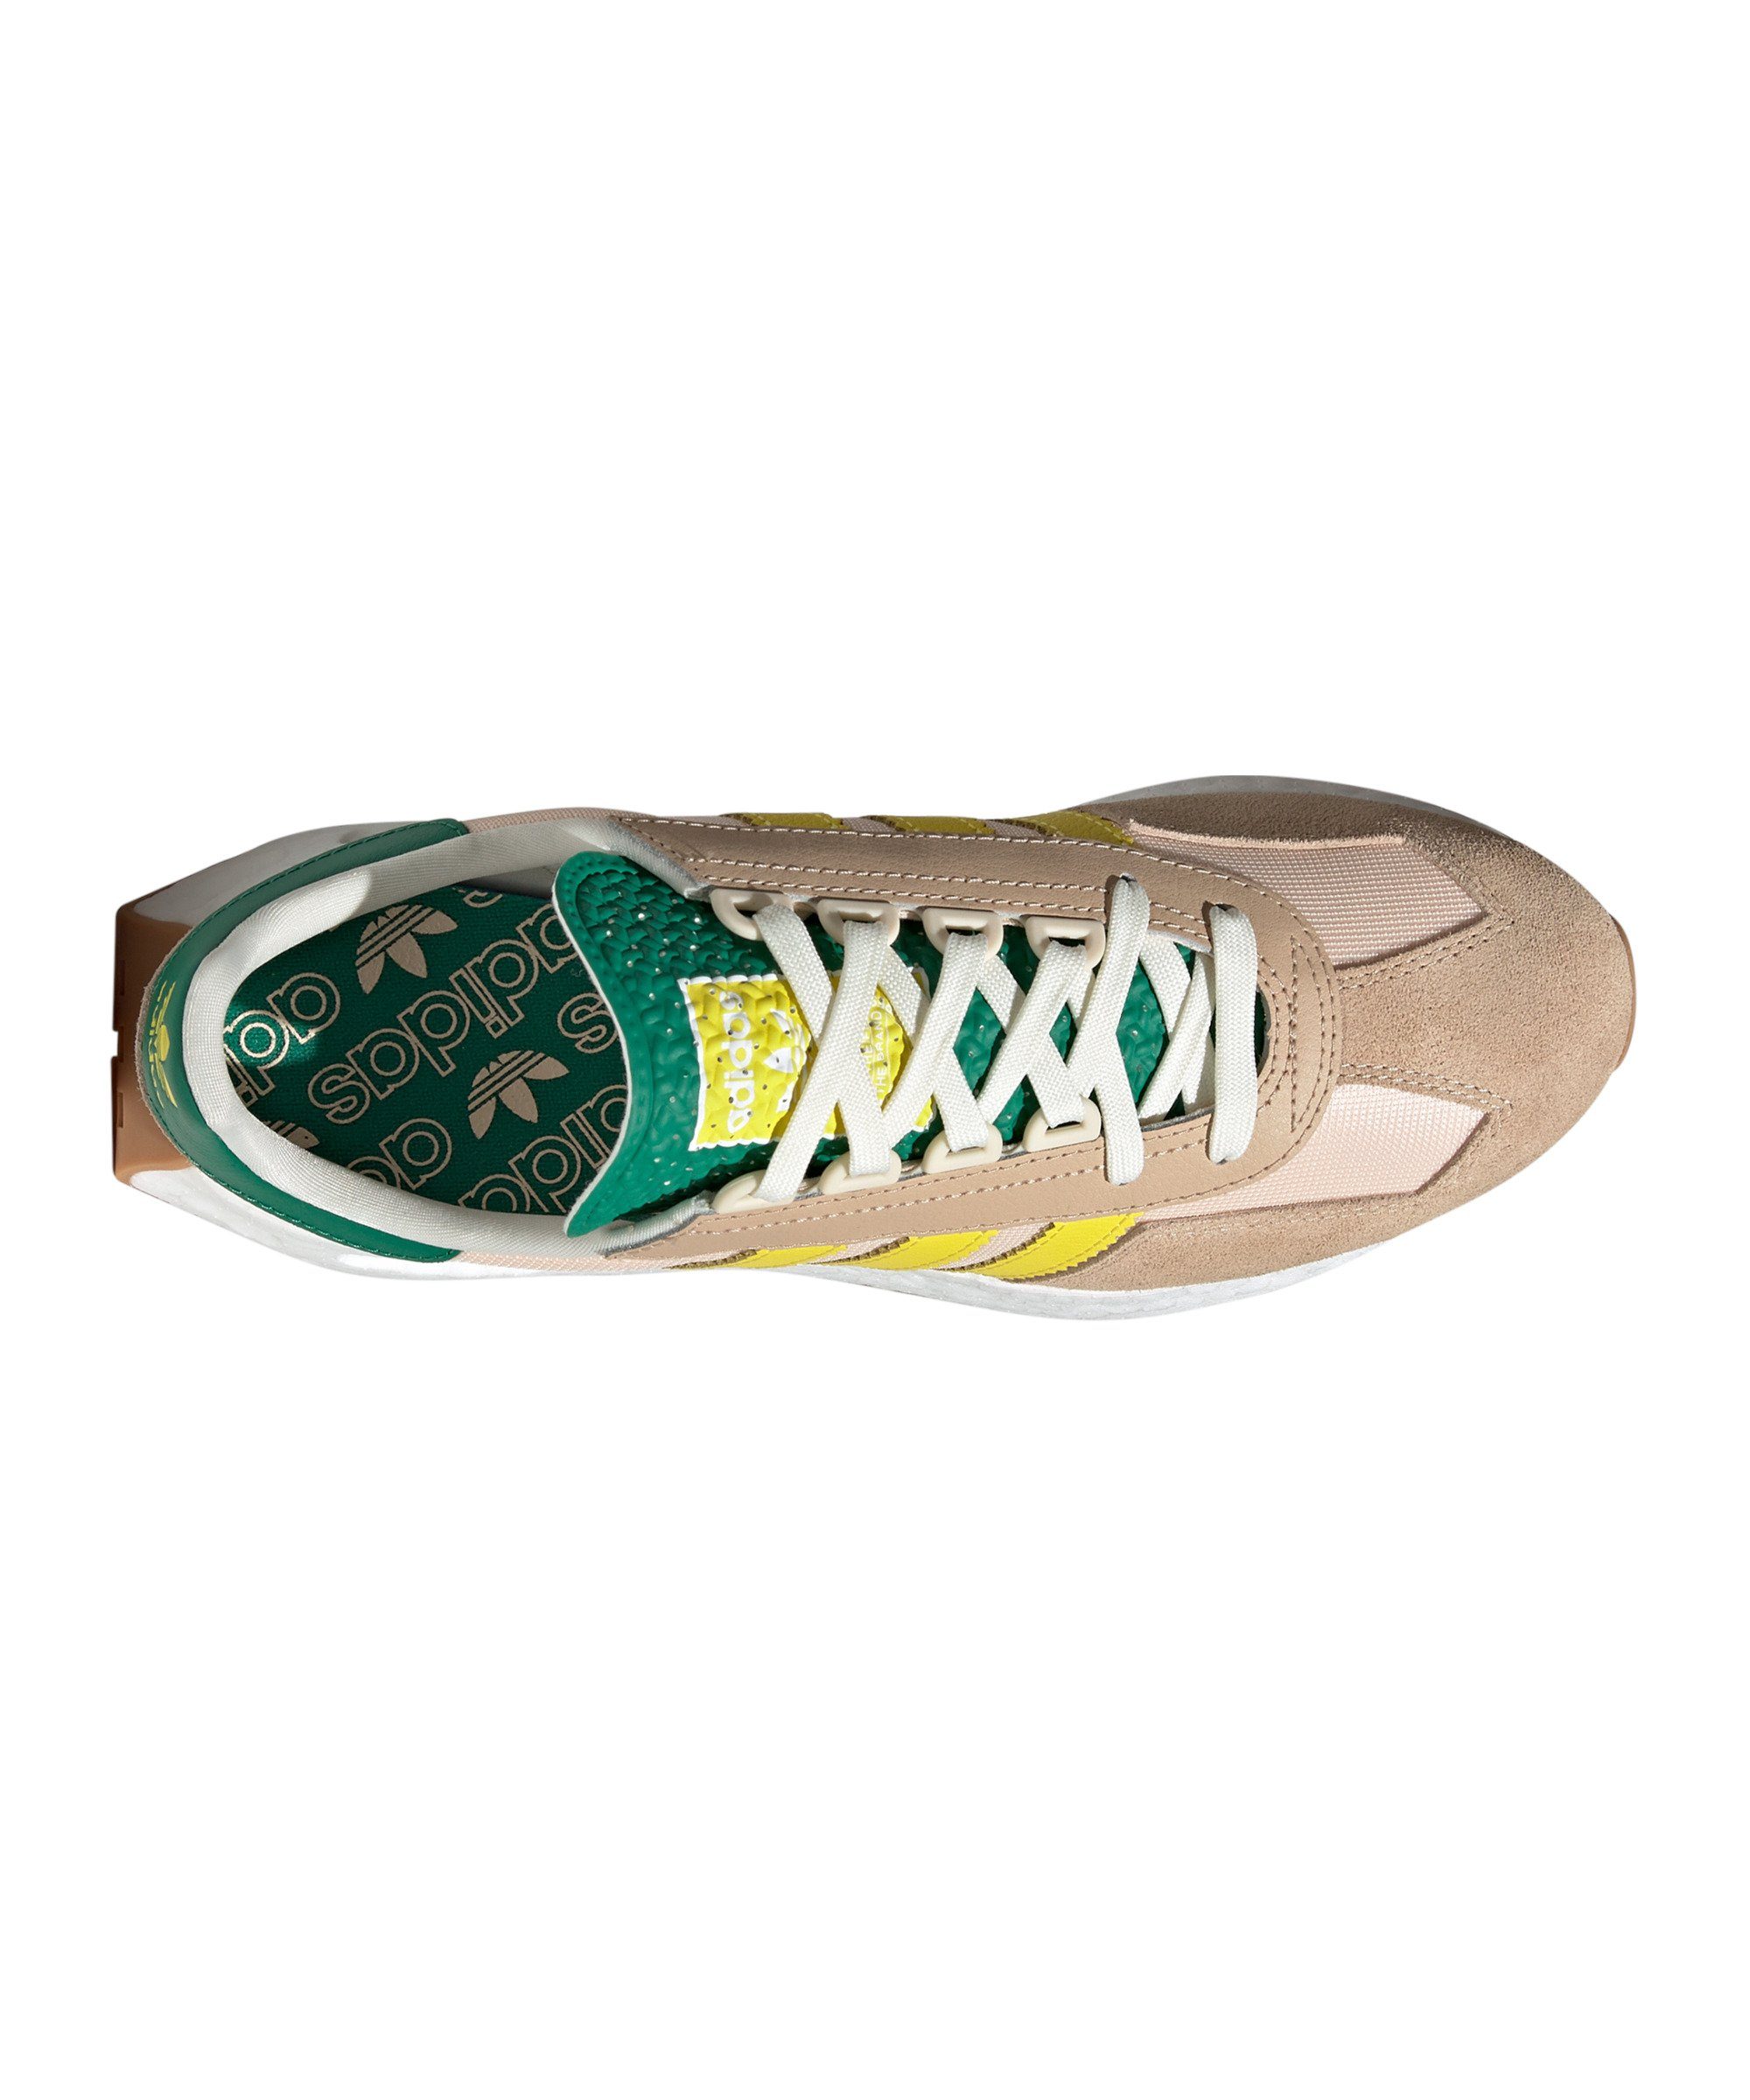 Retropy Sneaker braungelbgruen E5 adidas Originals